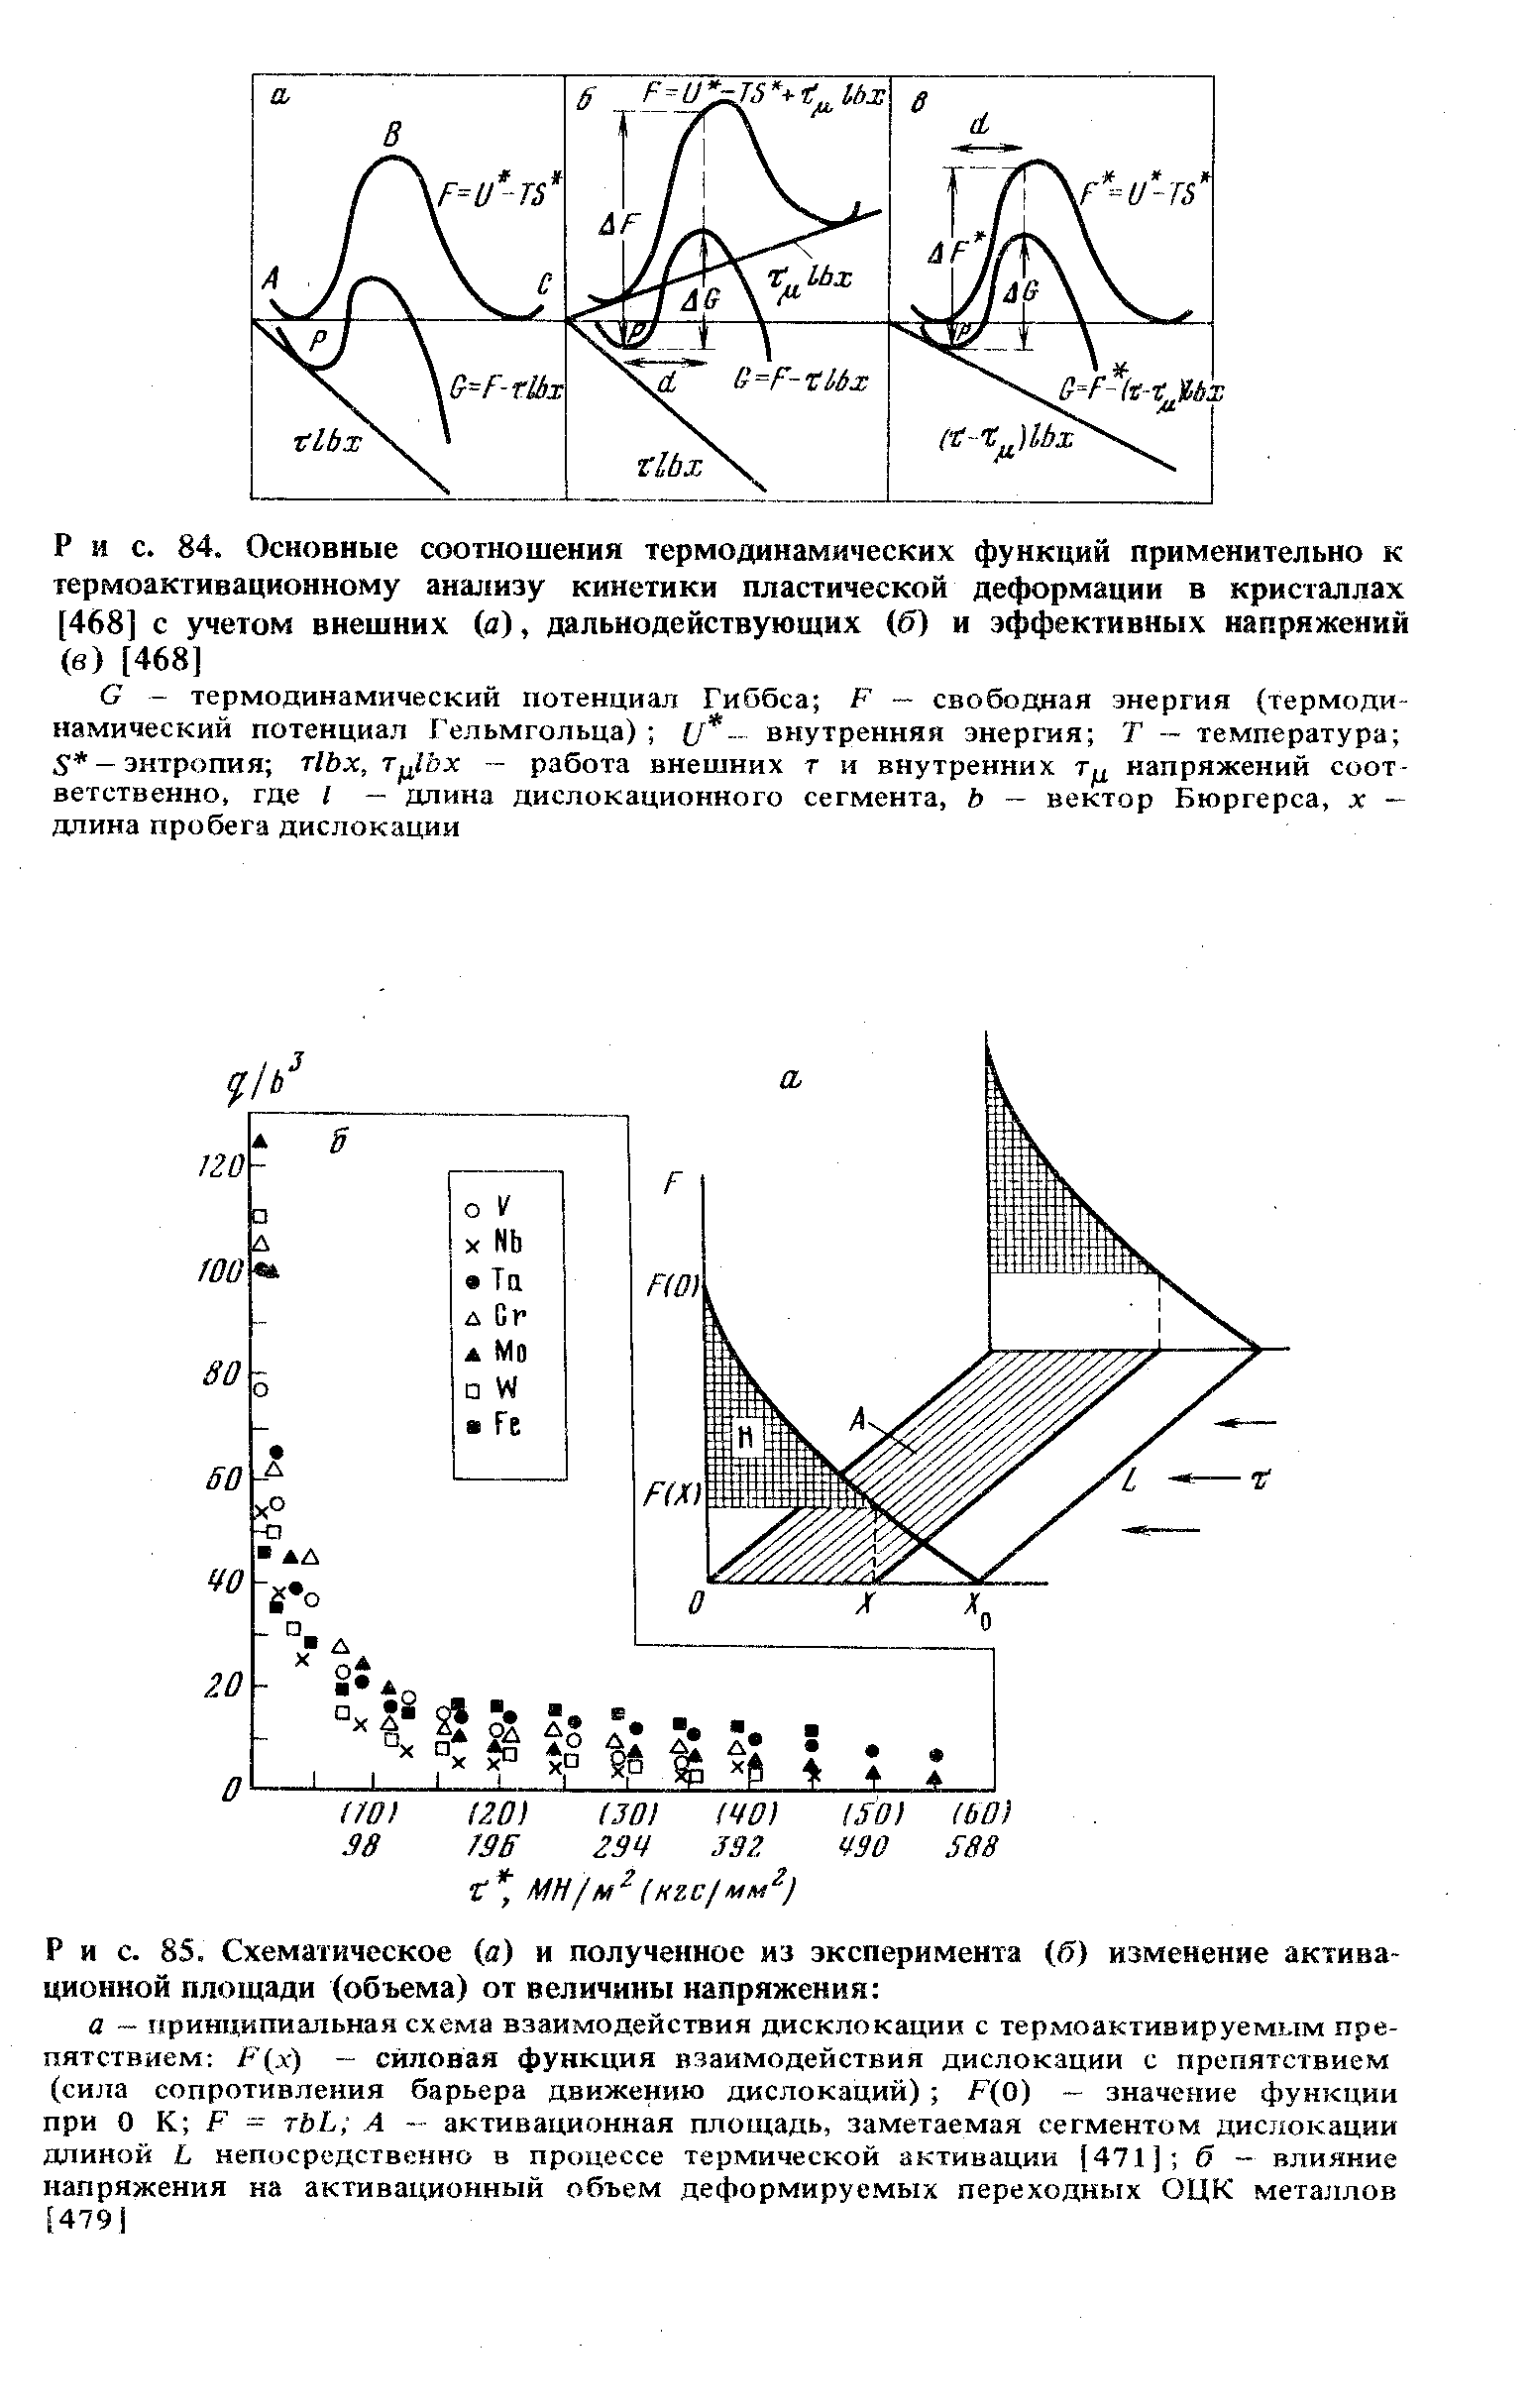 Рис. 85. Схематическое (a) и полученное из эксперимента (б) изменение активационной площади (объема) от величины напряжения 
